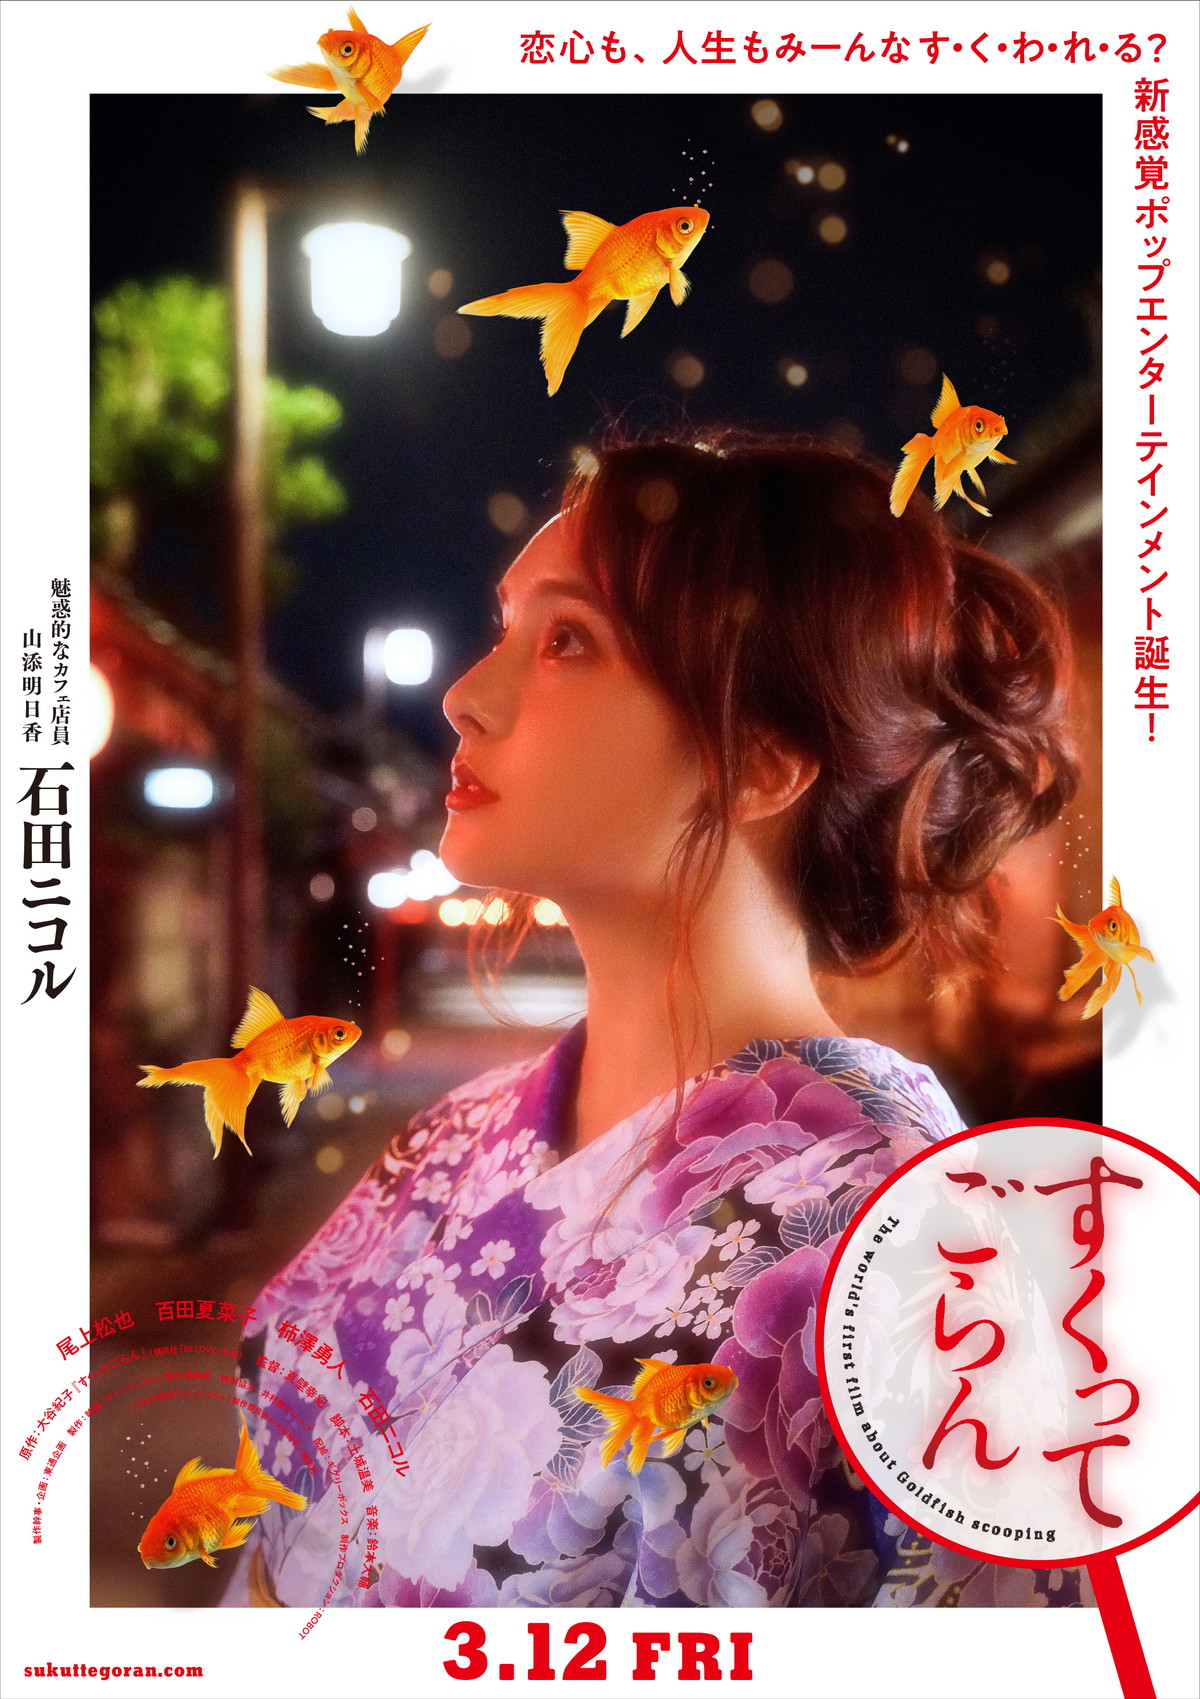 映画「すくってごらん」出演の尾上松也と百田夏菜子を、原作者・大谷紀子がイラスト化　ムビチケ前売券カードで